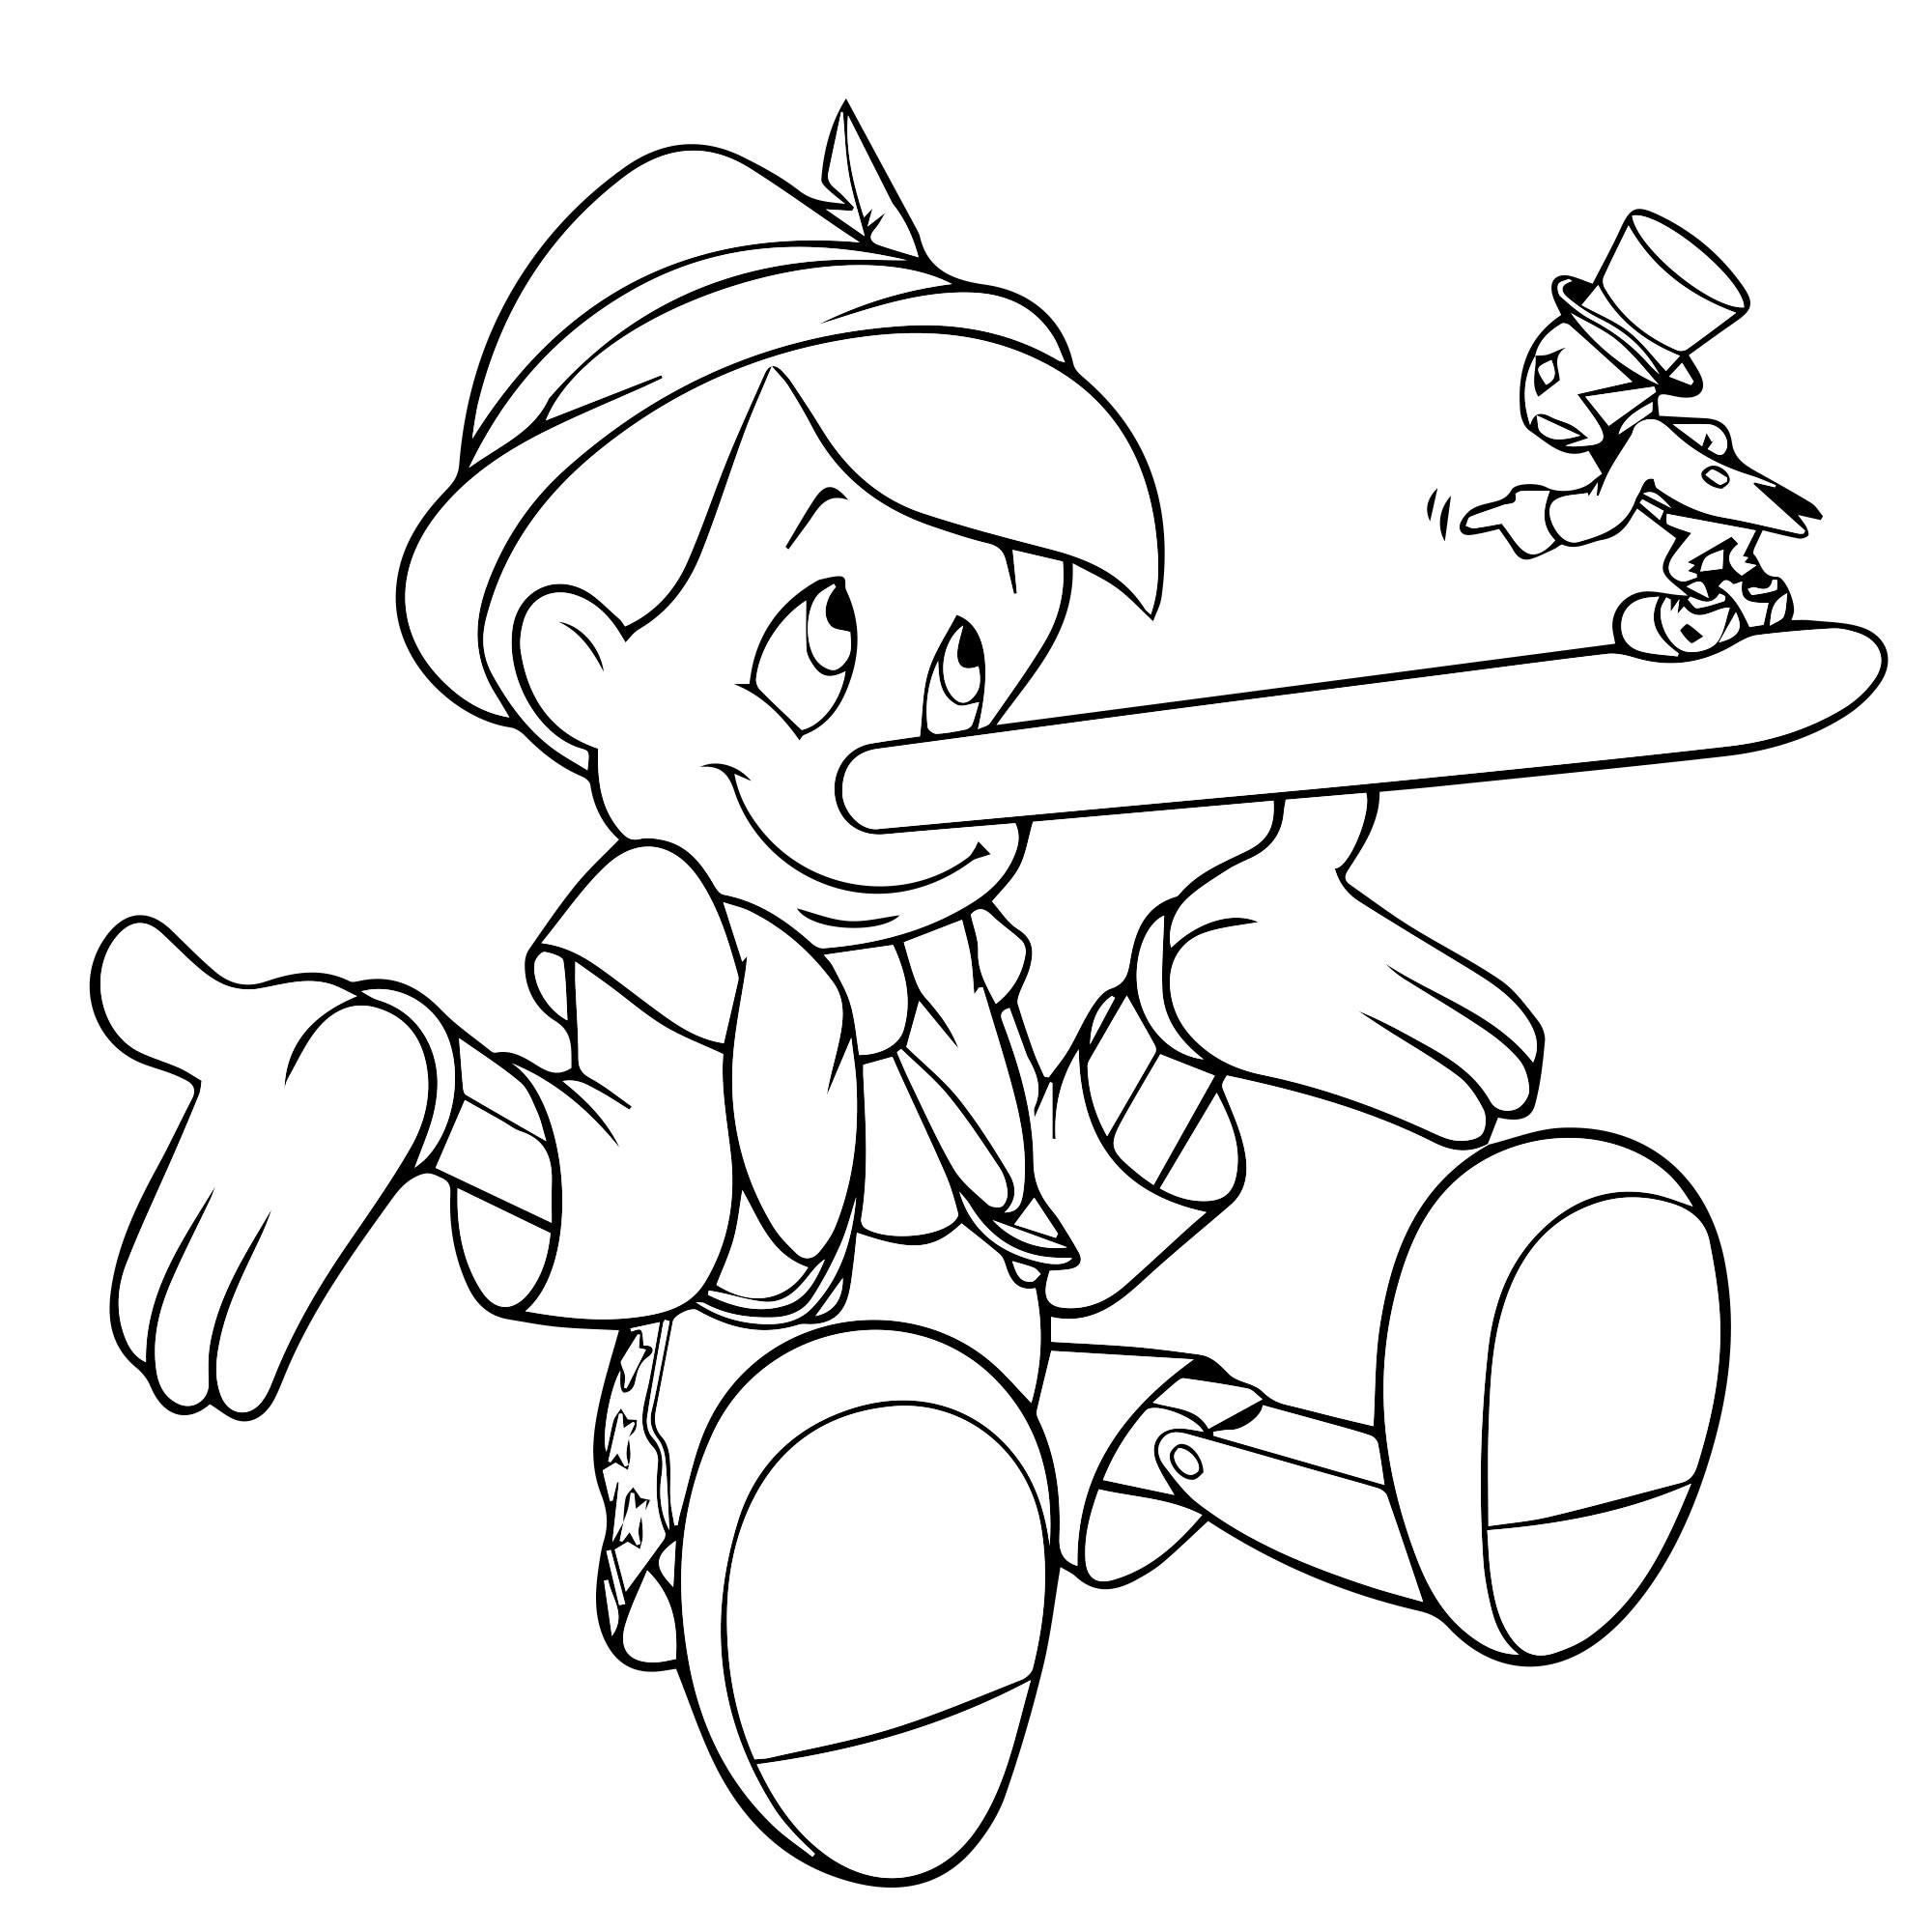 Пиноккио и Джимини раскраска для детей